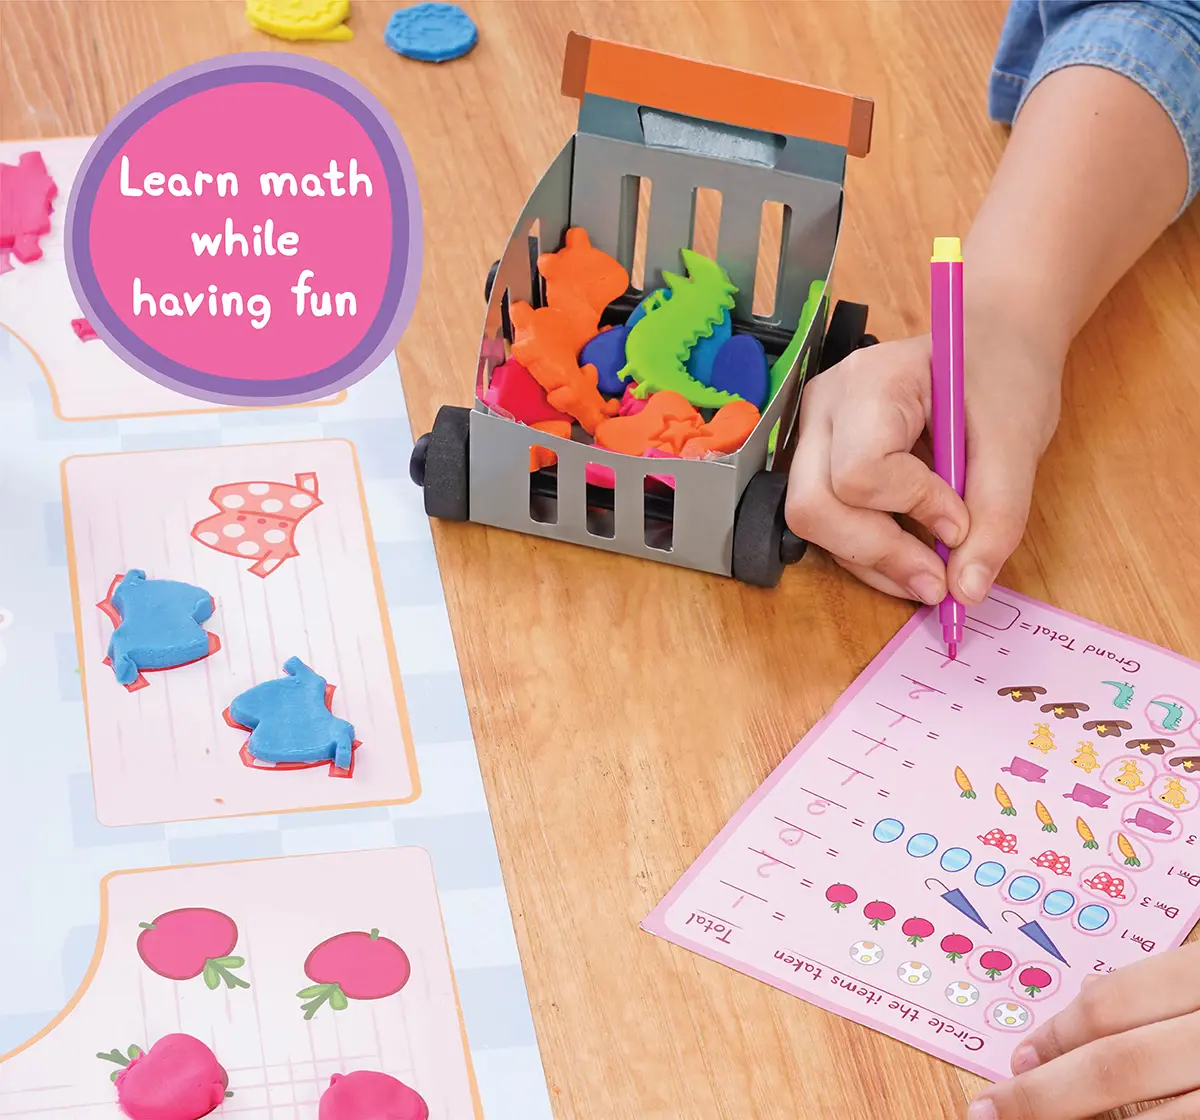 Dough Magic Peppa Pig Shop & Count Activity Set For Kids Age 3Y+, Multicolour